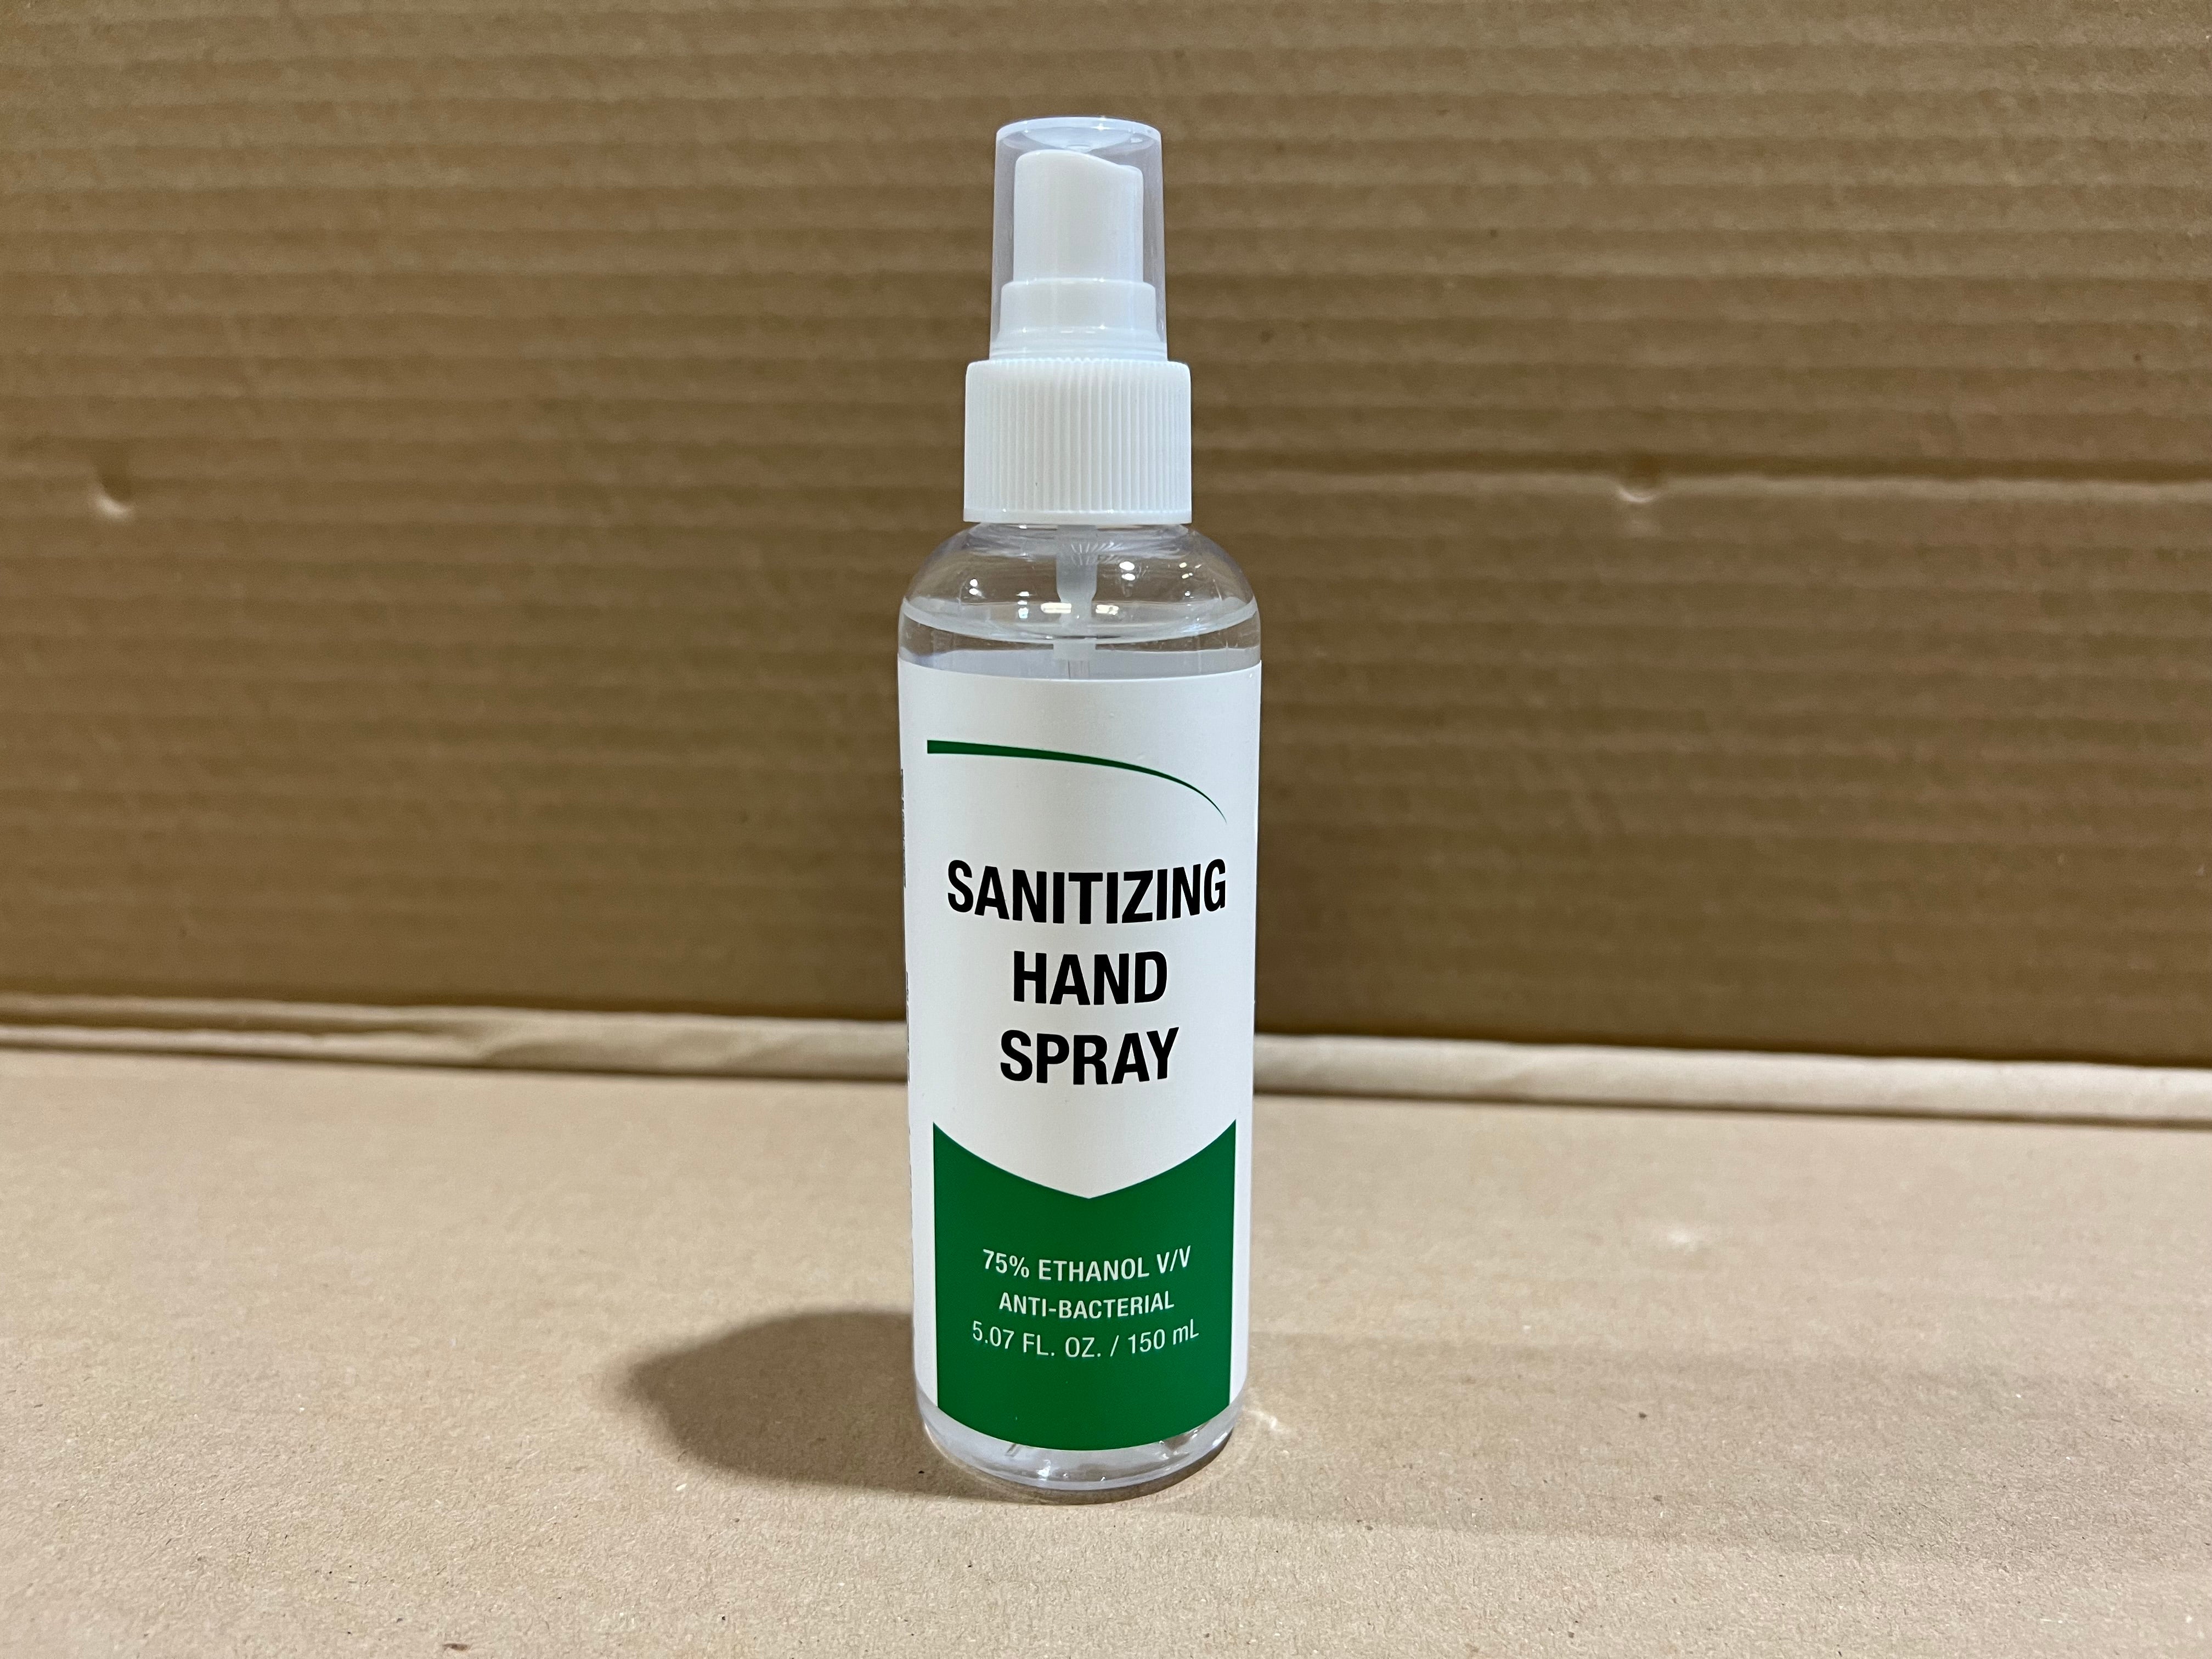 Snap Hand Sanitizer from Grainger 56MC34, 5oz. Spray Bottles, Sanitizer